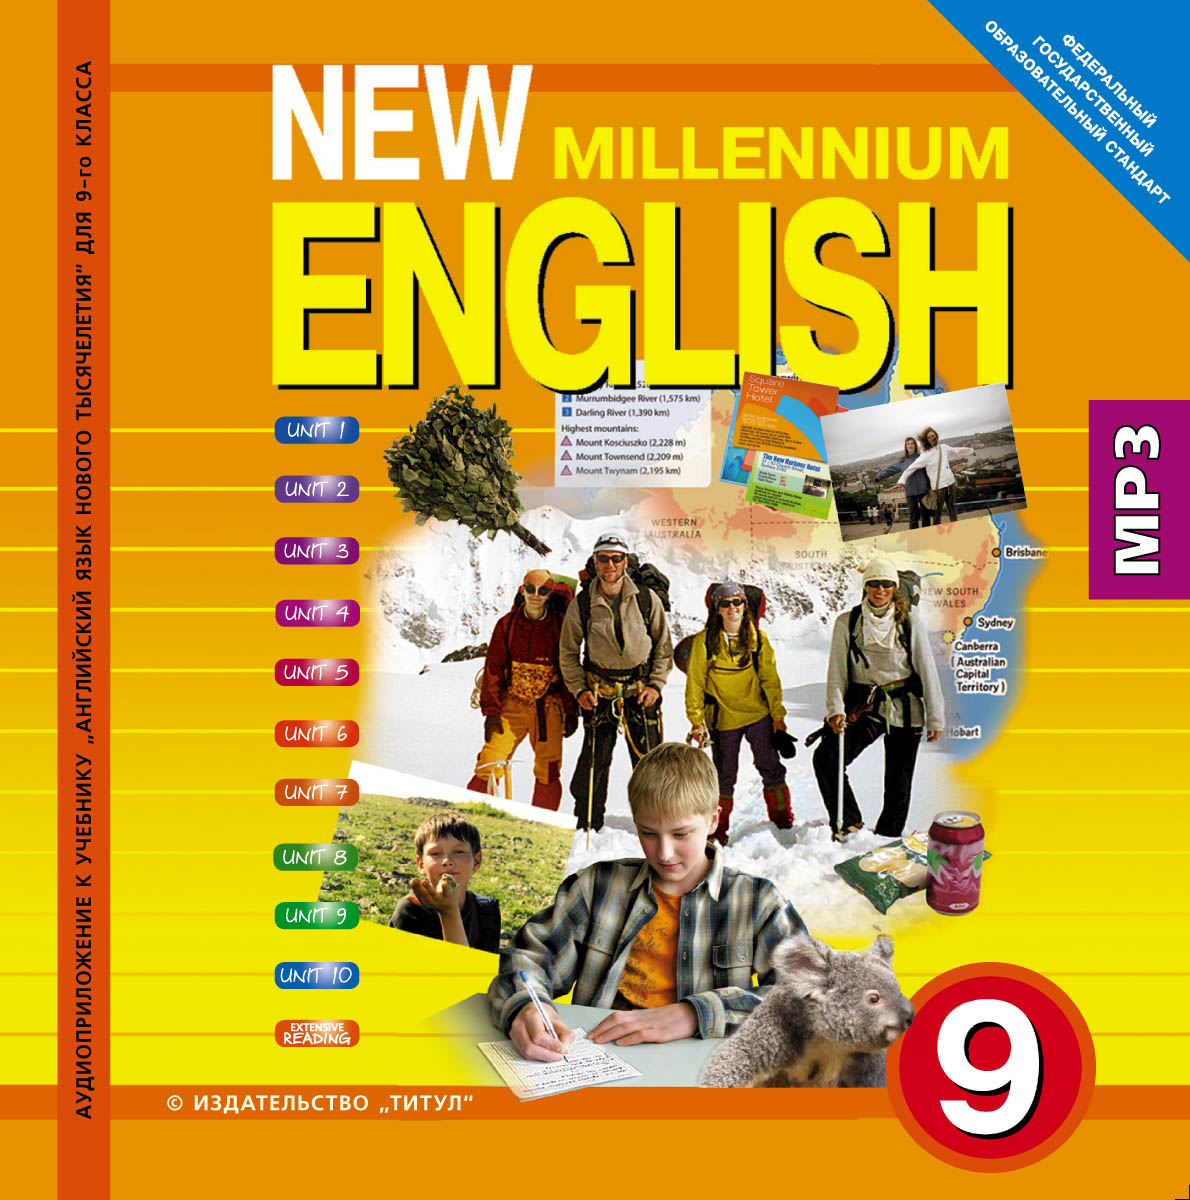 Английский 9 112. Миллениум Инглиш. Учебник New Millennium English. Нью Миллениум Инглиш. New Millennium English 9 класс.